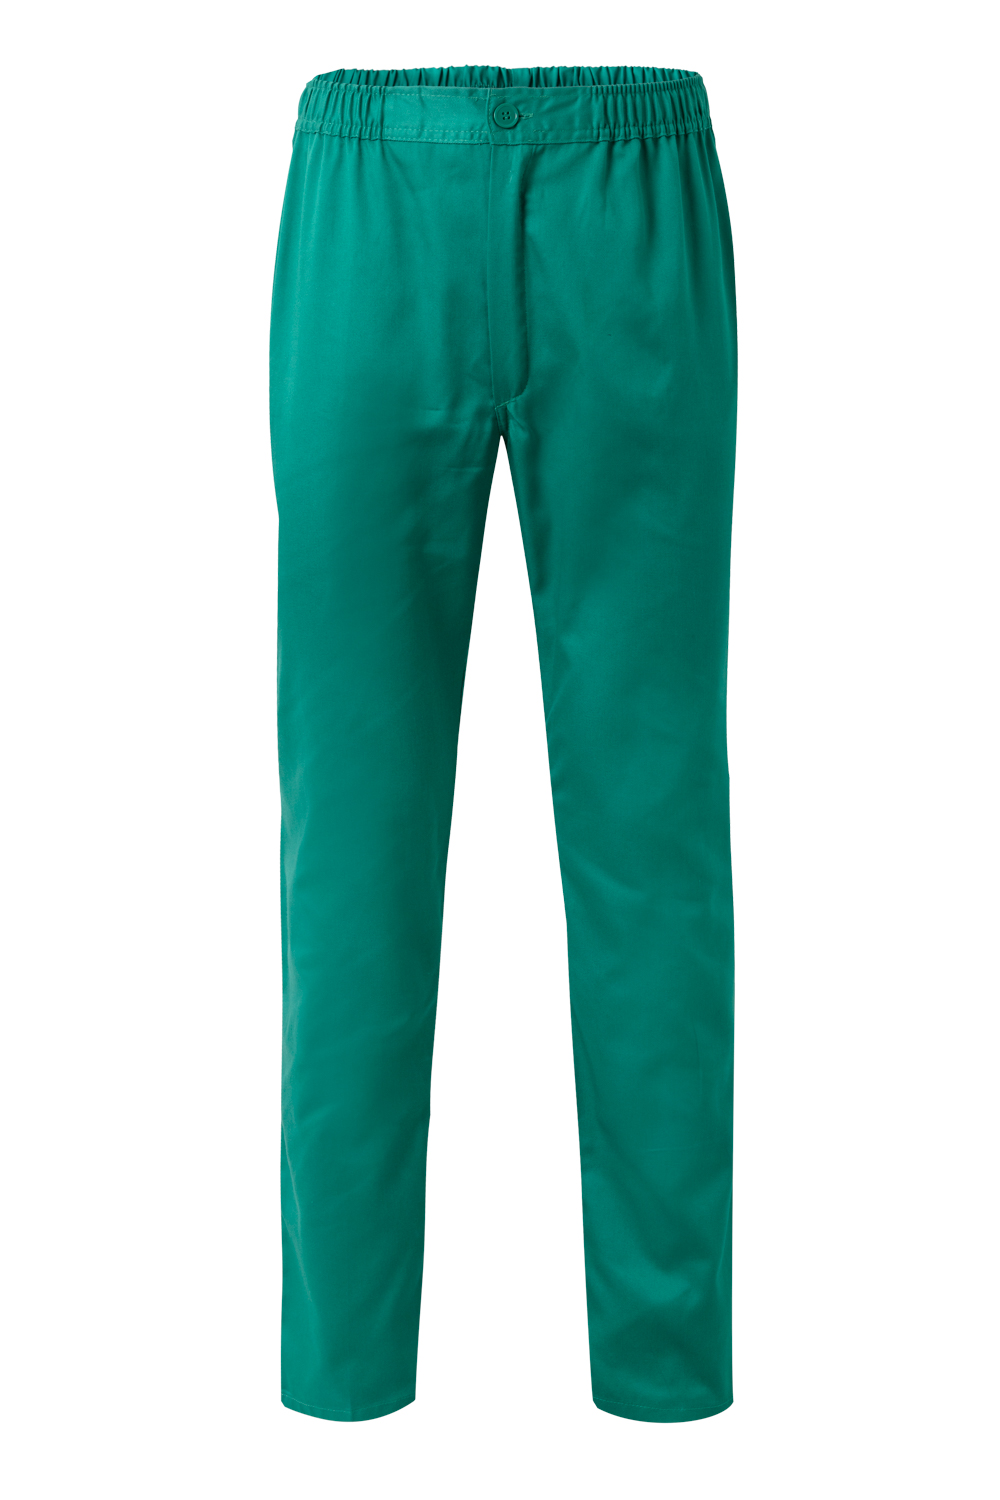 Pantalón Pijama Sanitario 336